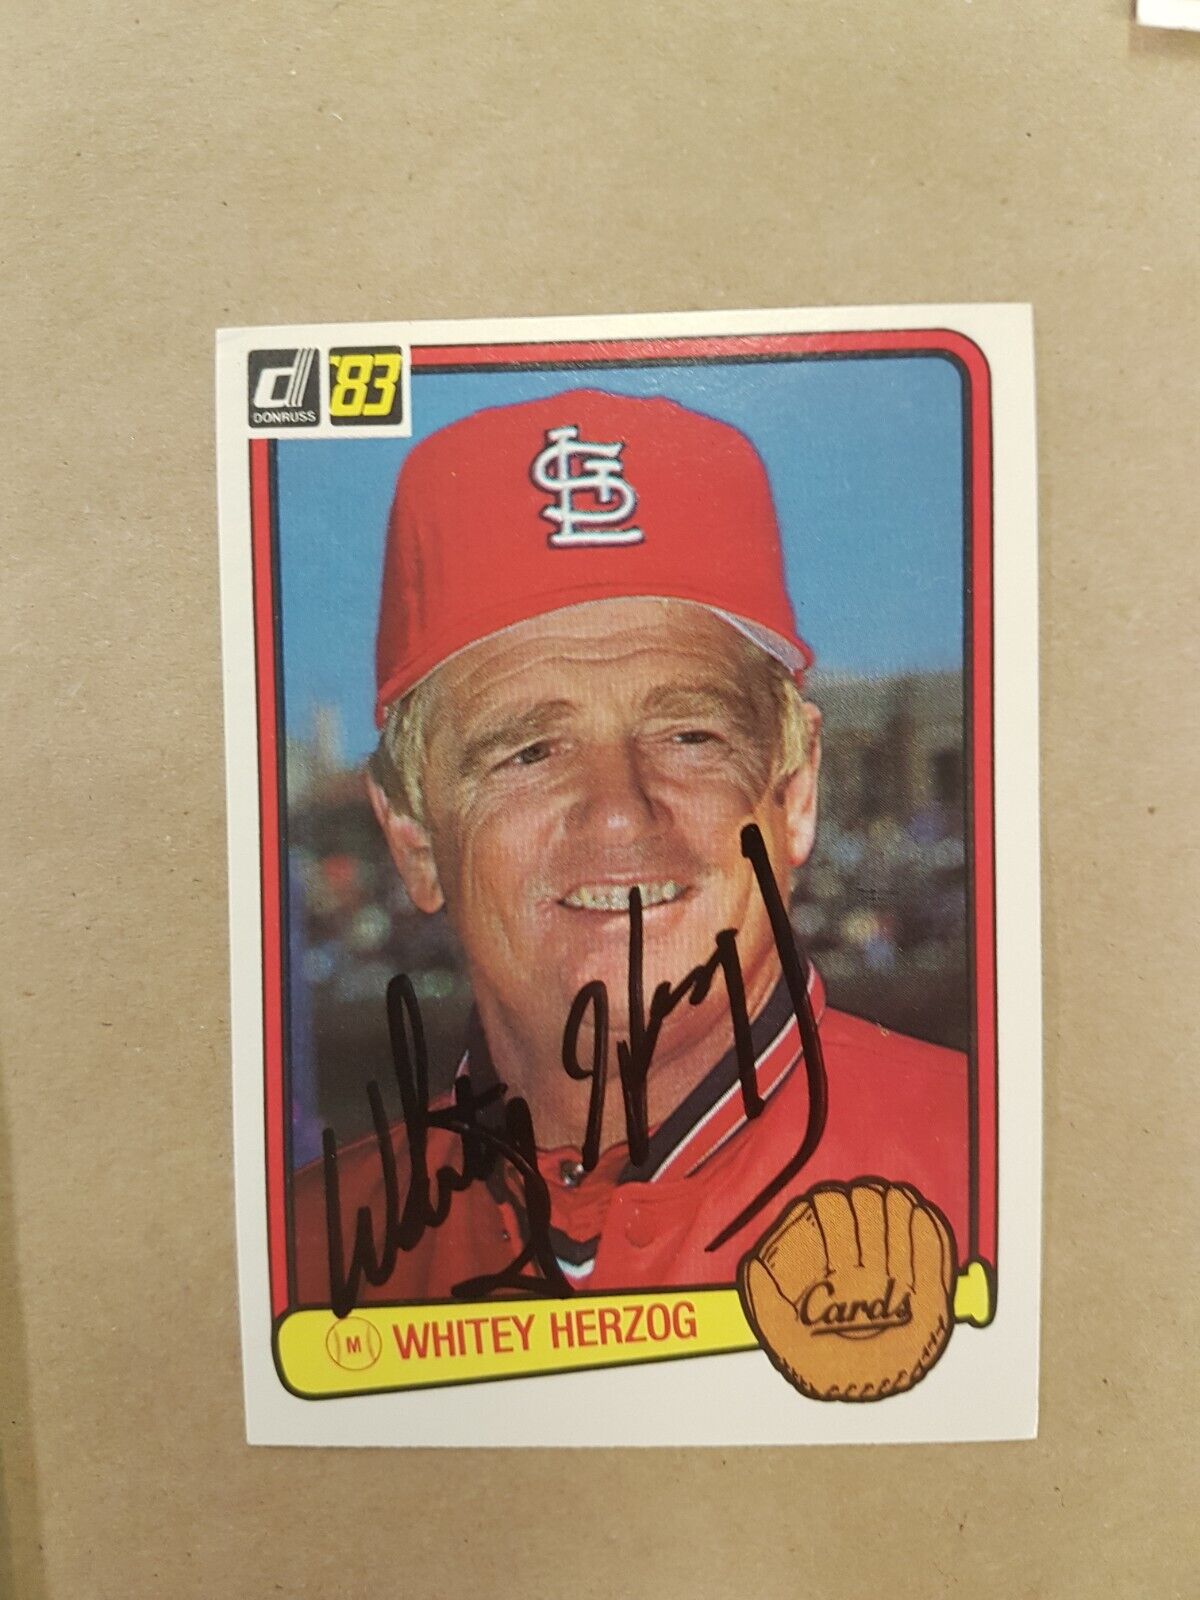 Whitey Herzog 530 Donruss 1982 Autograph Photo SPORTS signed Baseball card MLB